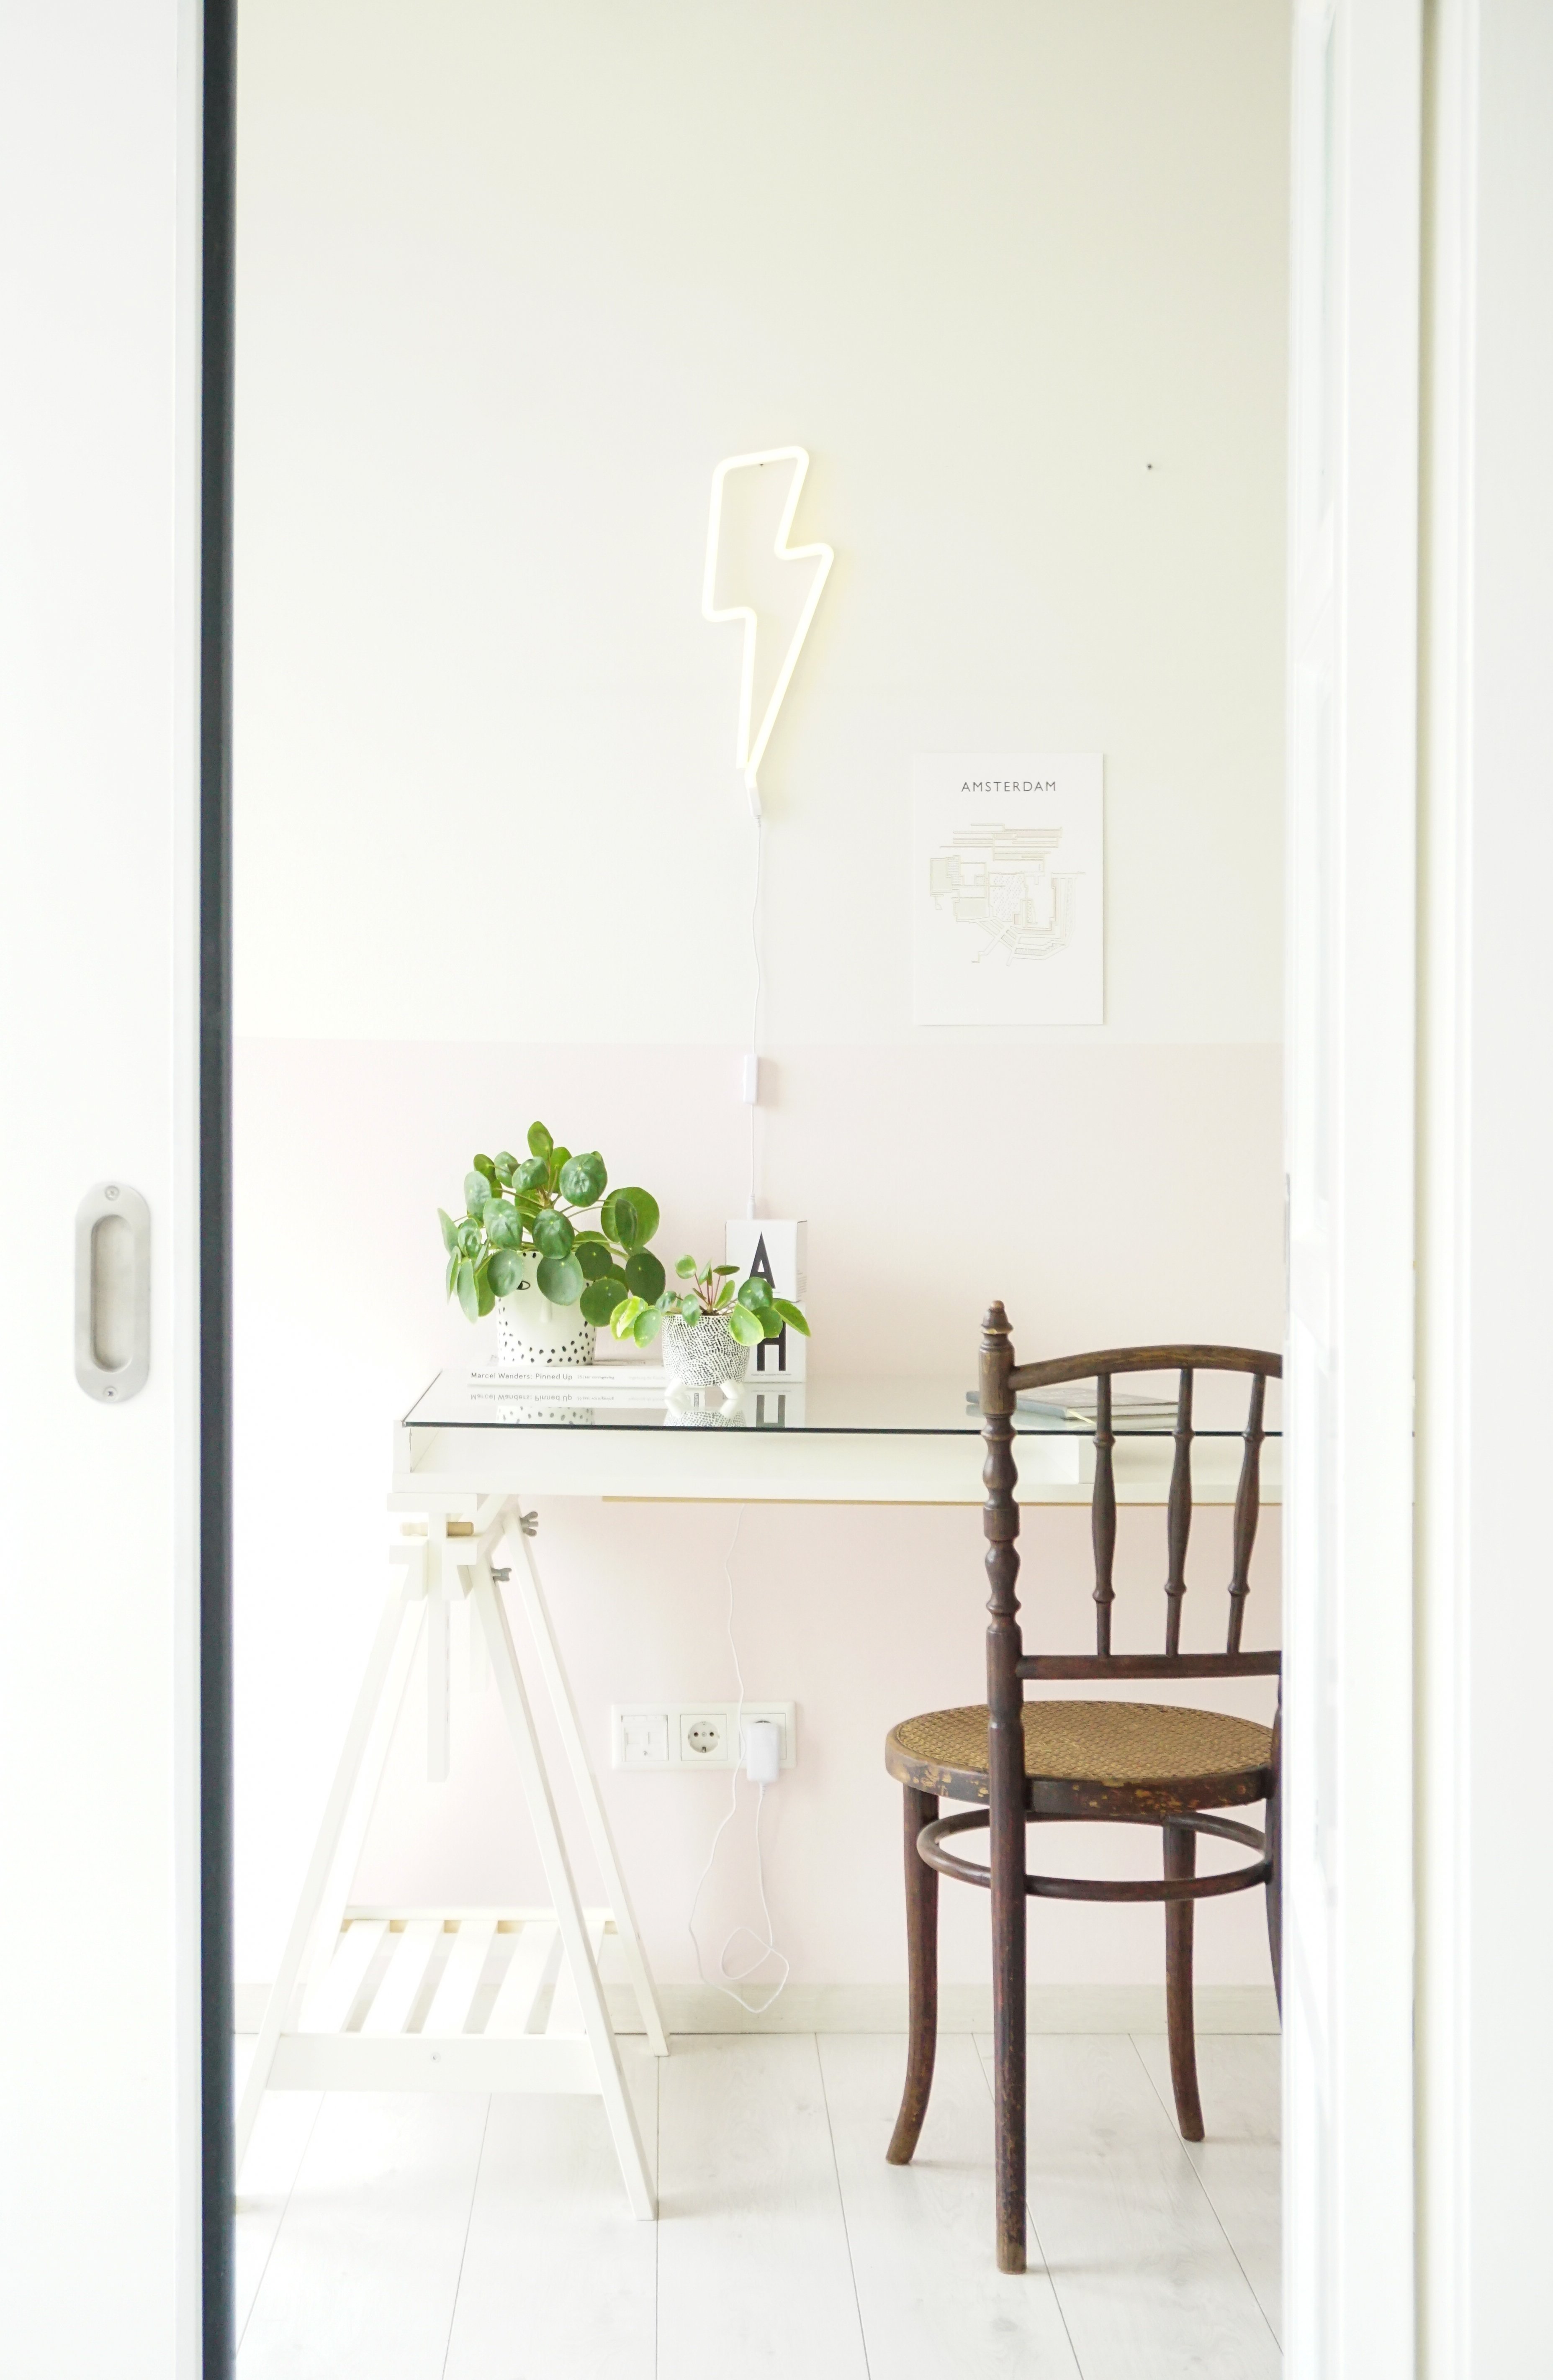 Thuiswerkplek inspiratie met een roze lambrisering op de muur!